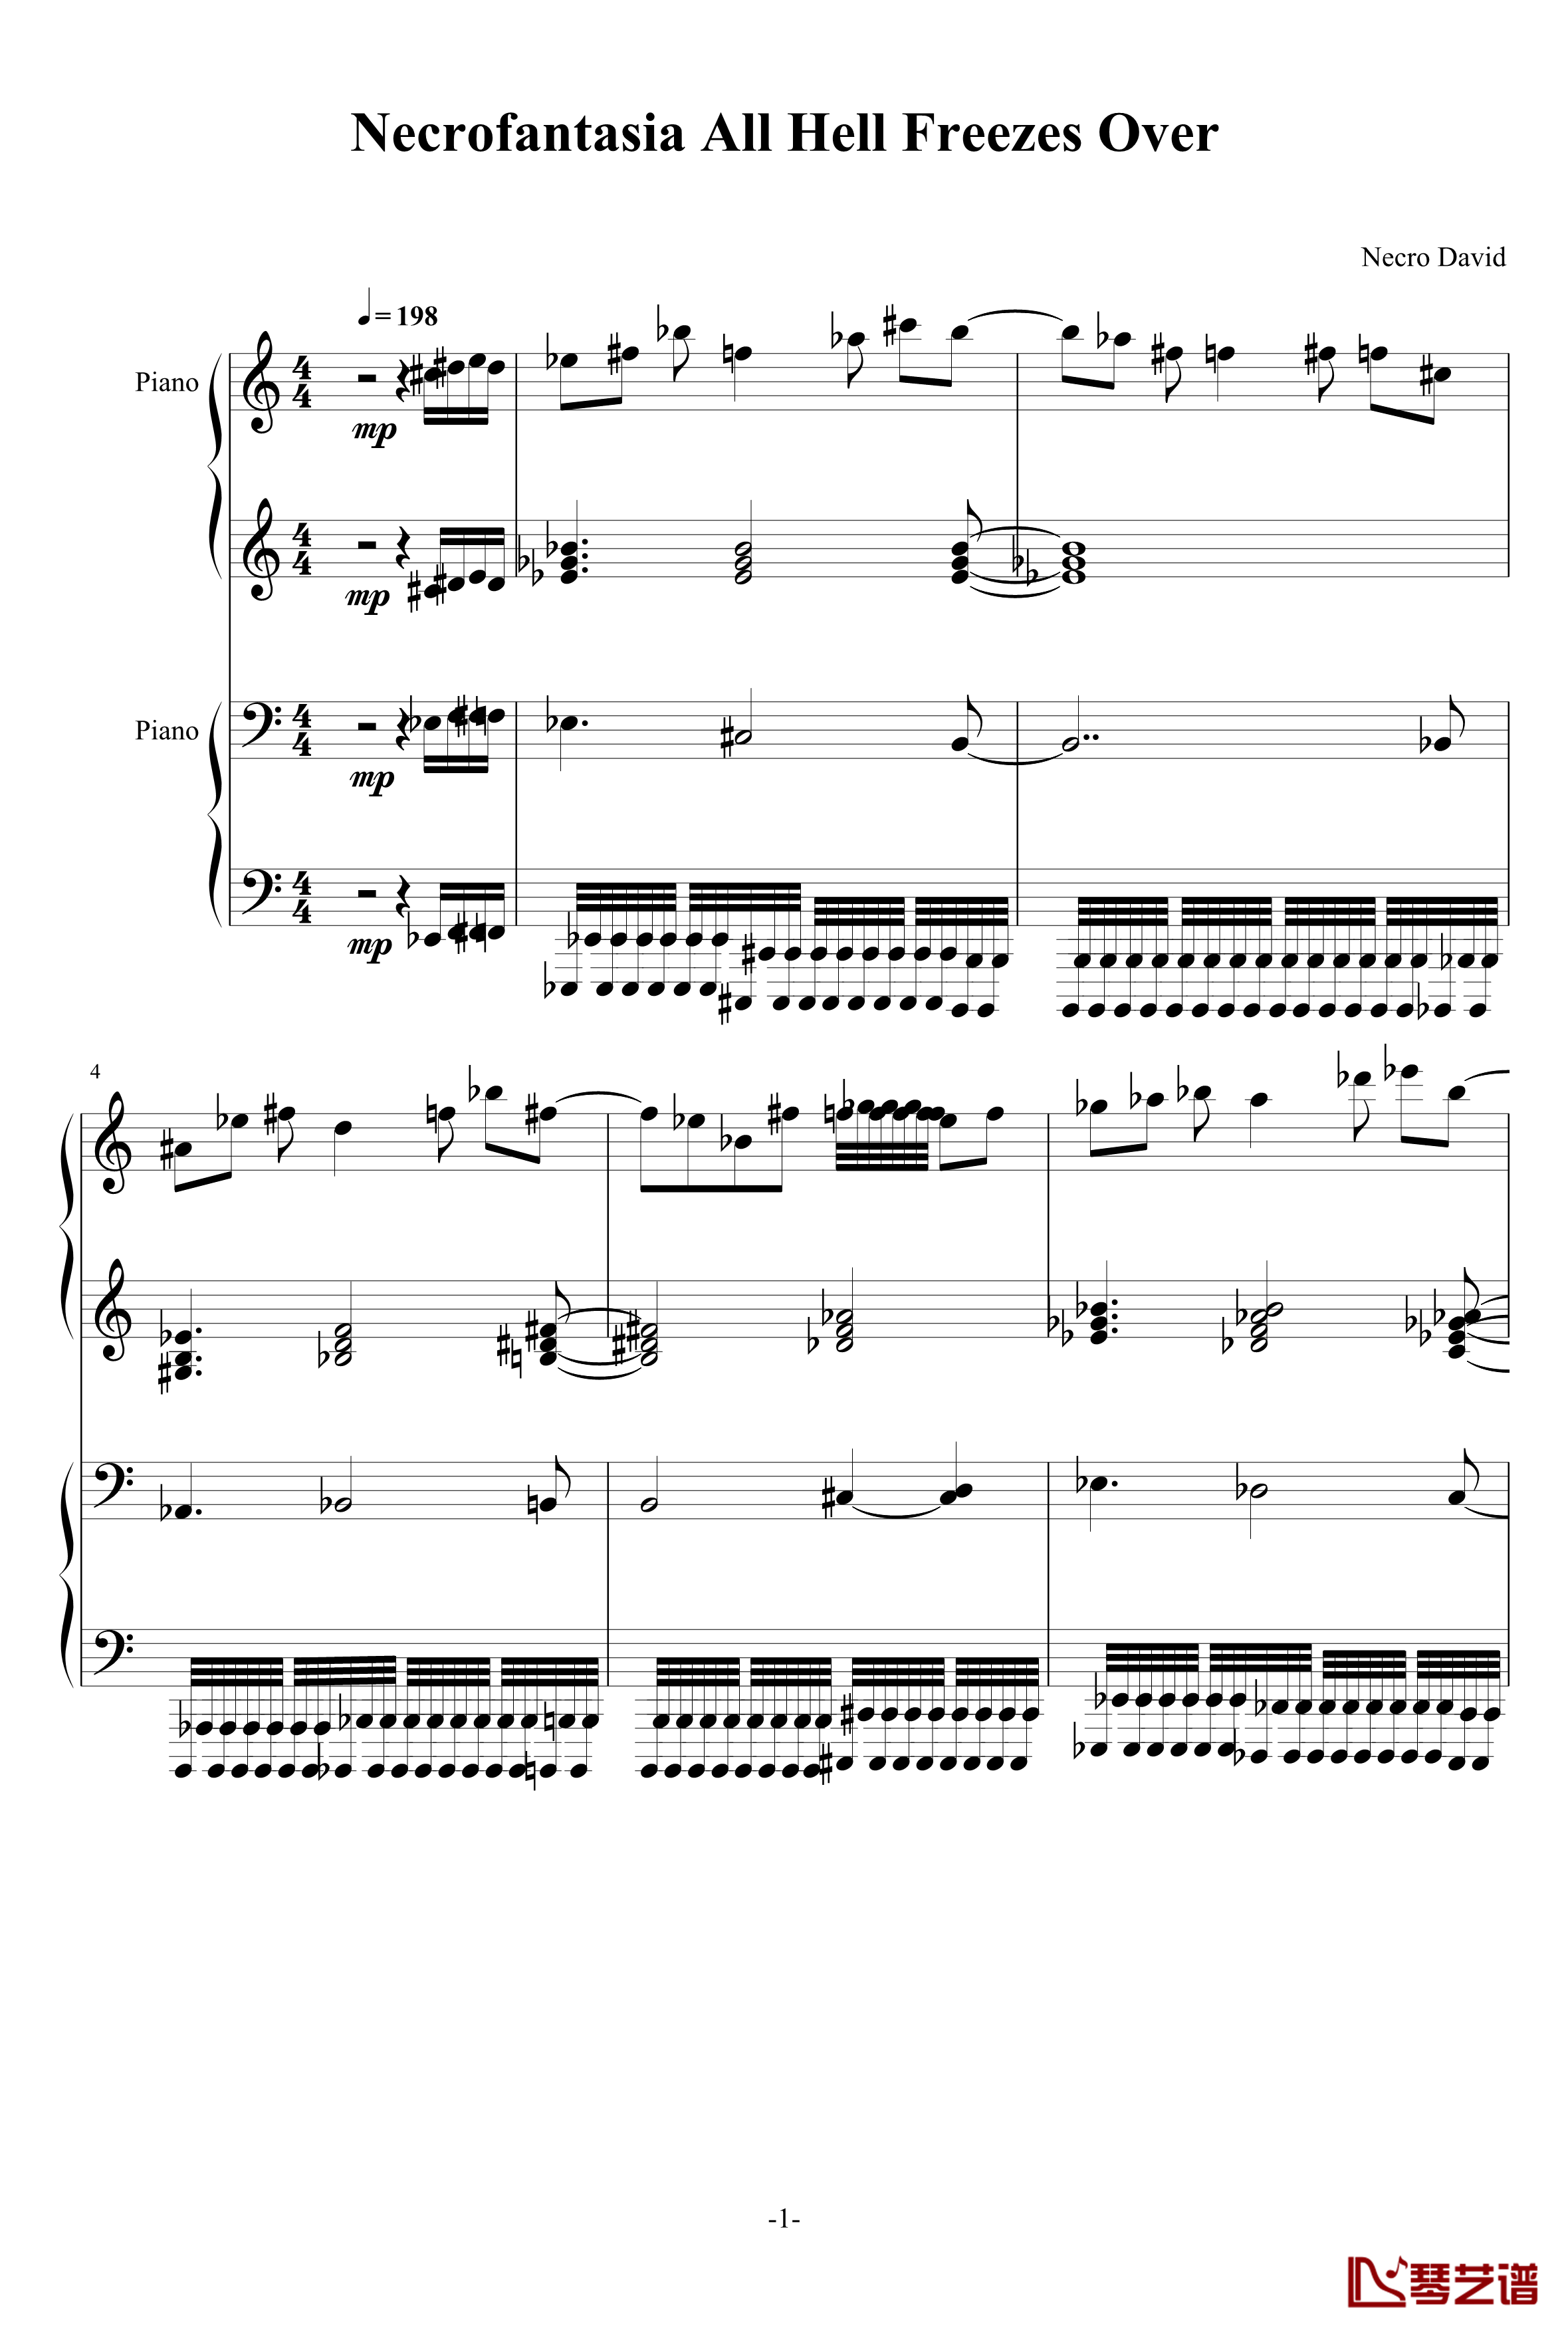 亡灵幻想曲原版人类可弹钢琴谱-鬼畜1